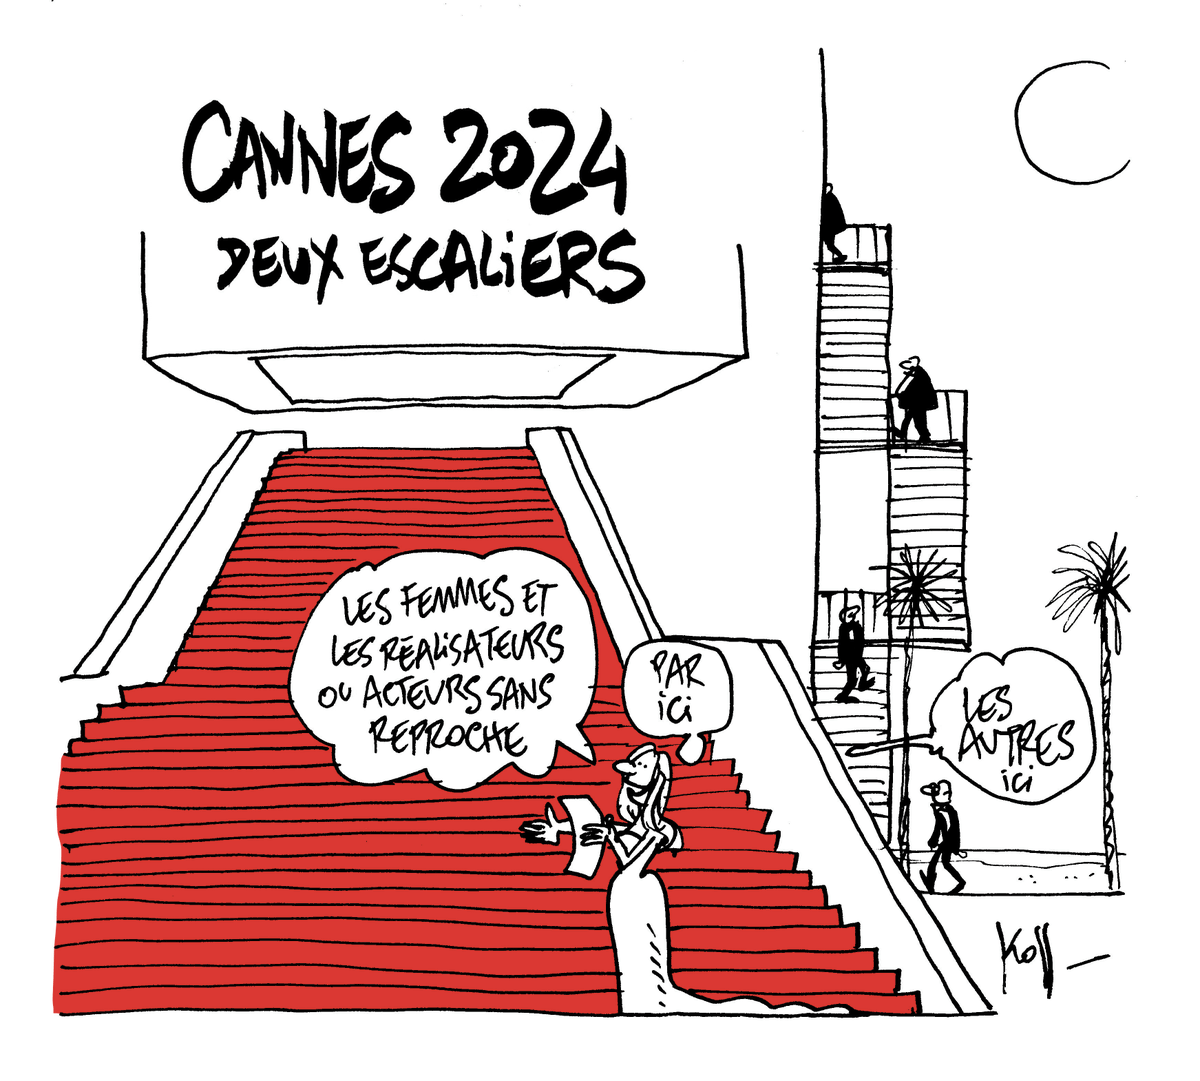 [BLOG]
'Un festival de Cannes sous le signe de #Metoo' - un dessin de @pierrekroll (Belgique) sur notre blog #Libéronslescrayons via @lemondefr : lemonde.fr/blog/cartoonin…